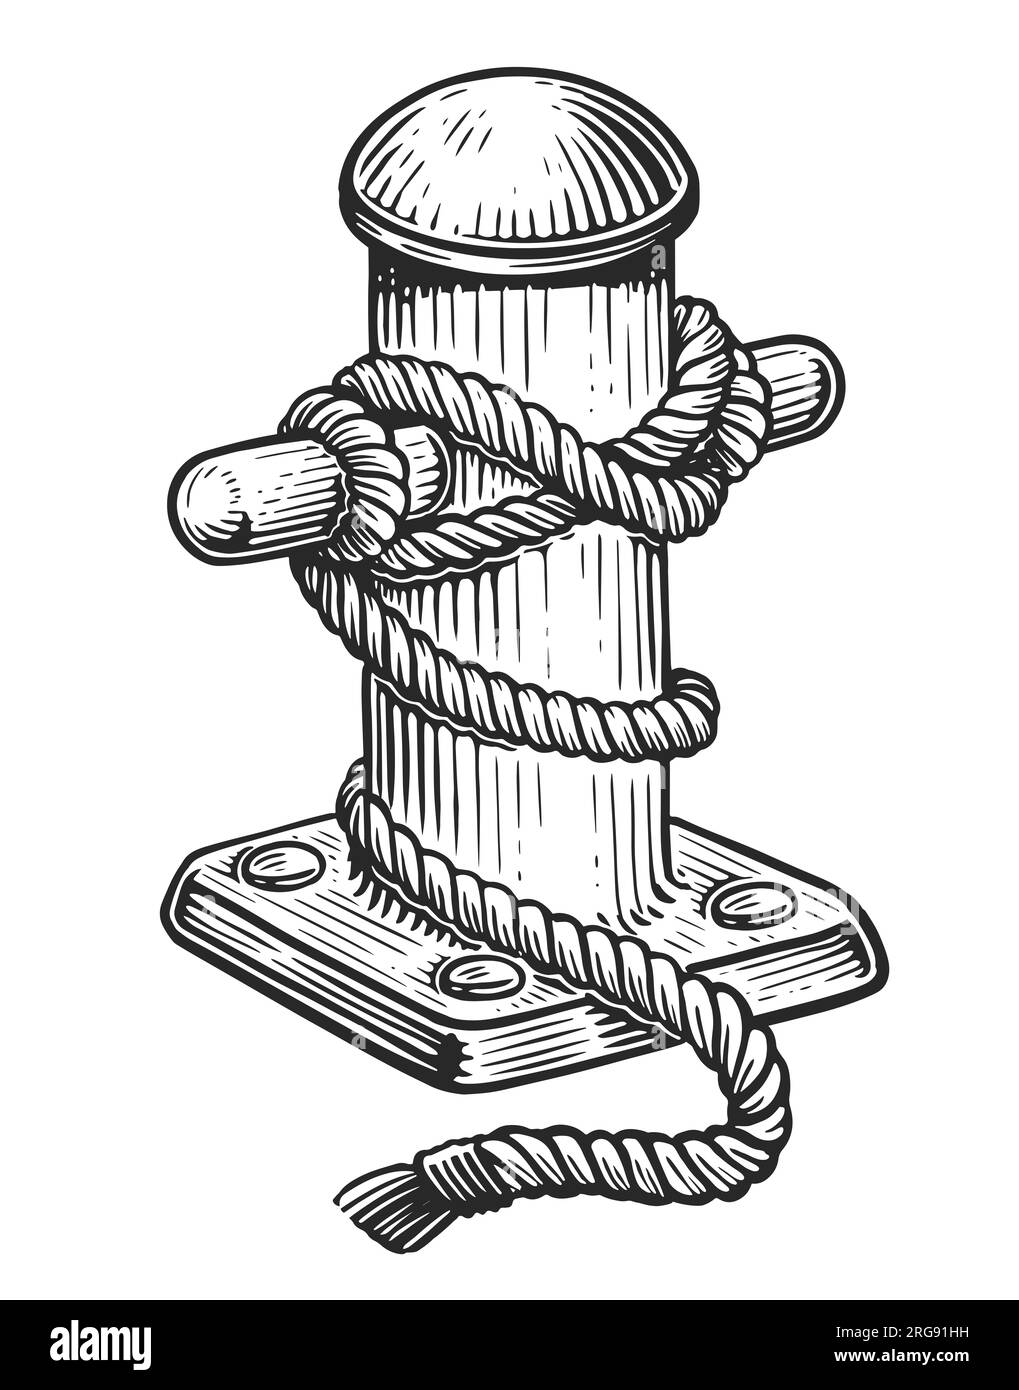 Vieux bollard marin avec corde attachée sur la jetée. Dessin dessiné à la main illustration vintage Banque D'Images